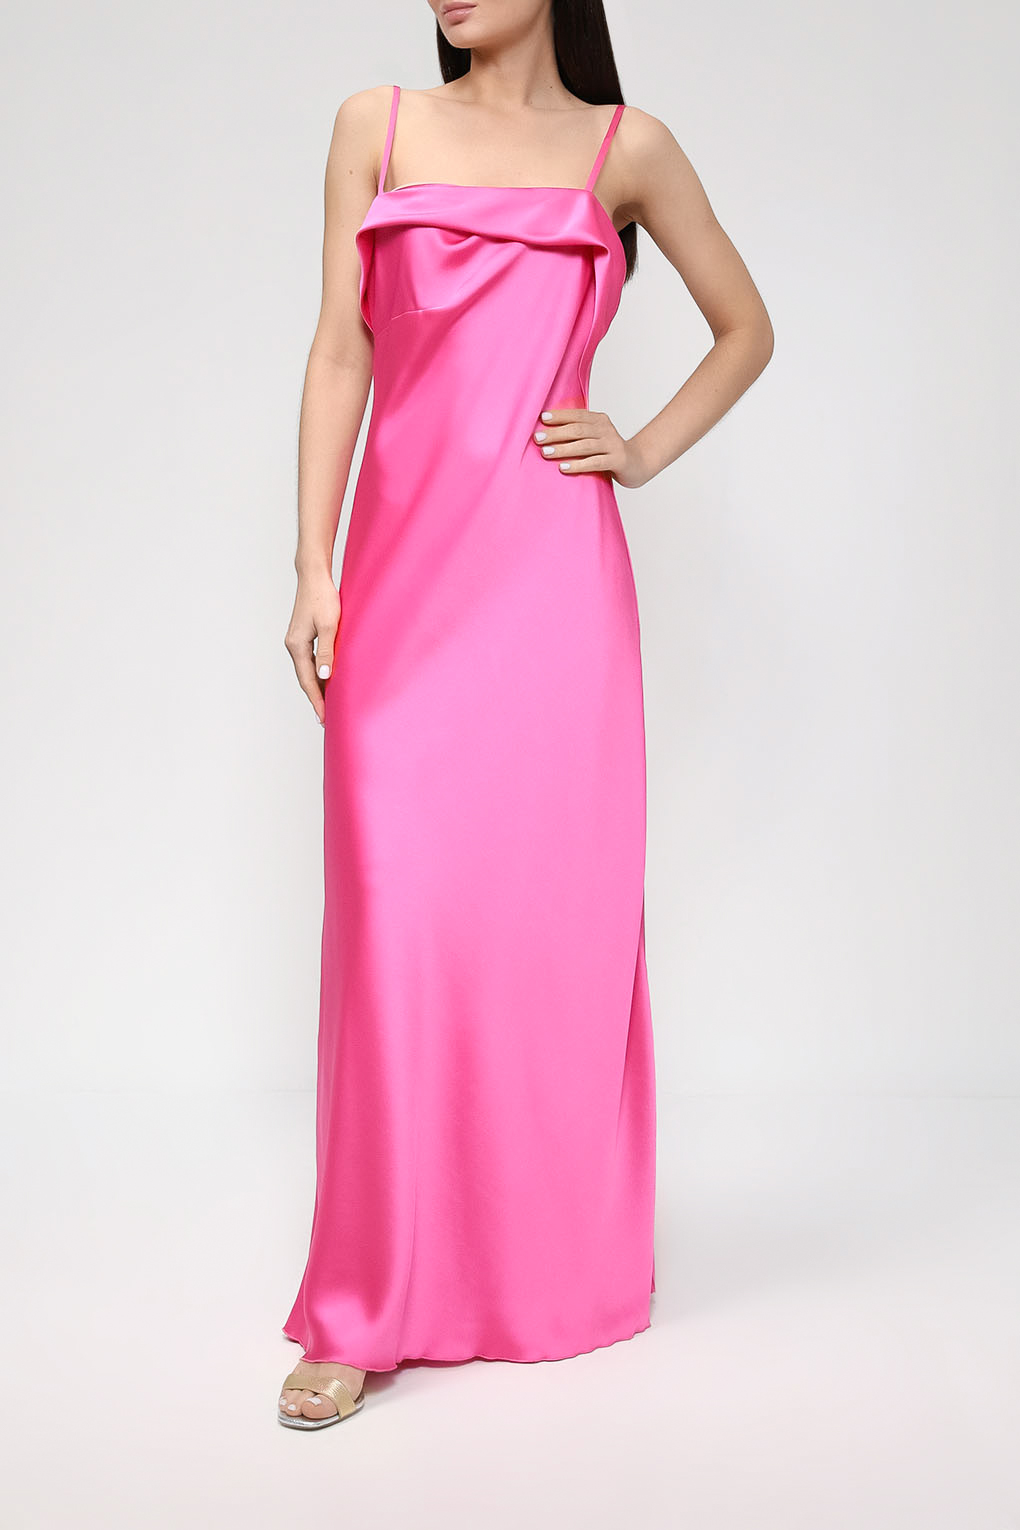 Платье женское Belucci BL23045331-007 розовое XL